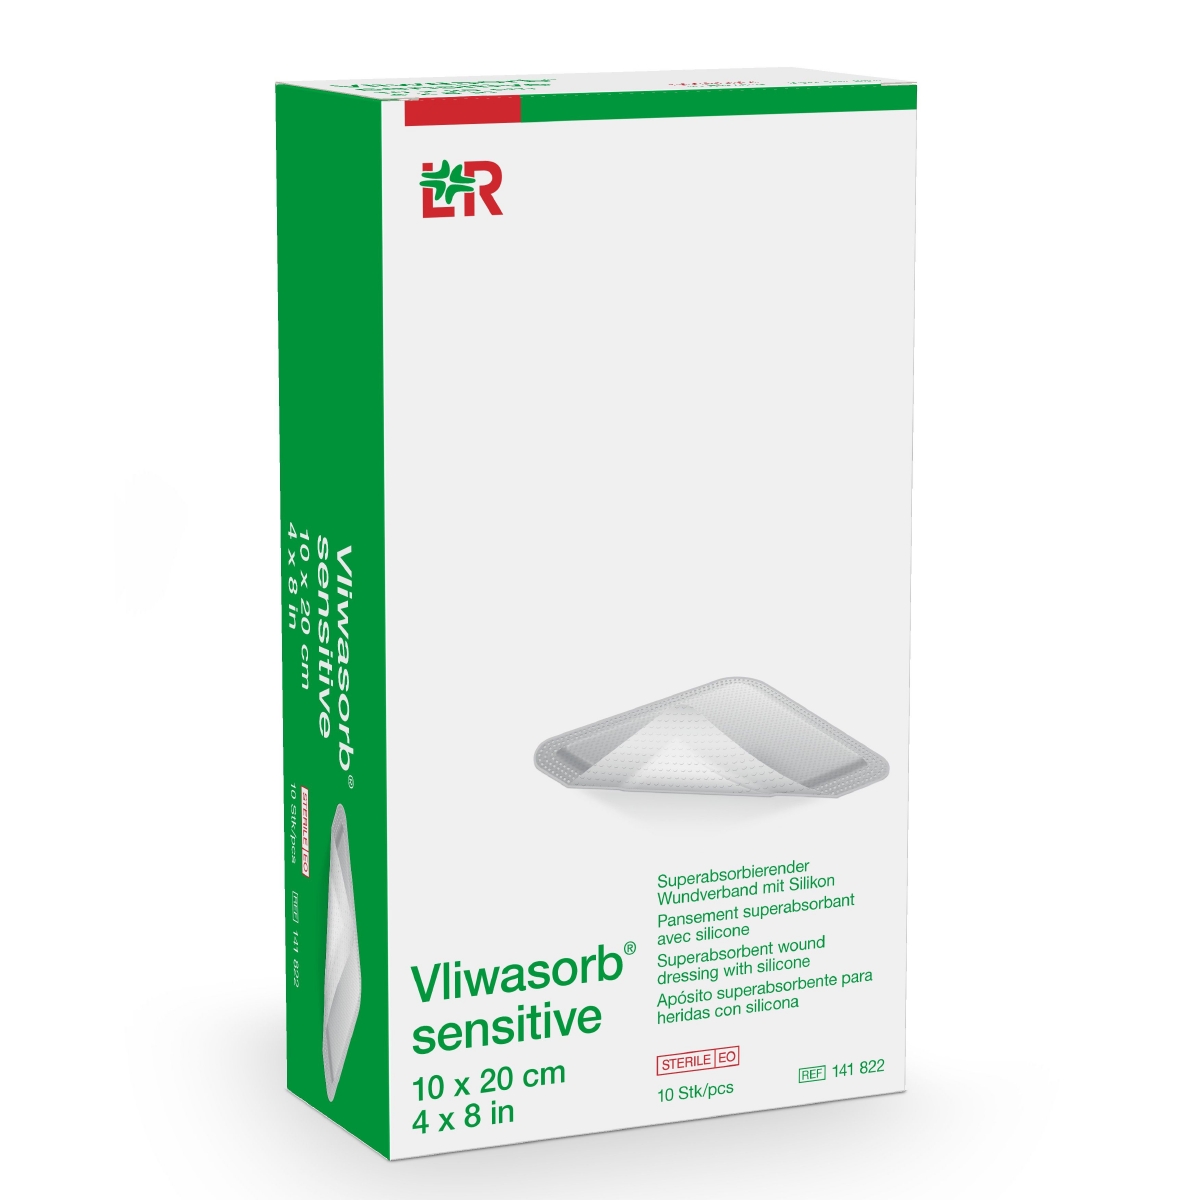 Vliwasorb® sensitive superabsorbierender Wundverband 10 cm x 20 cm